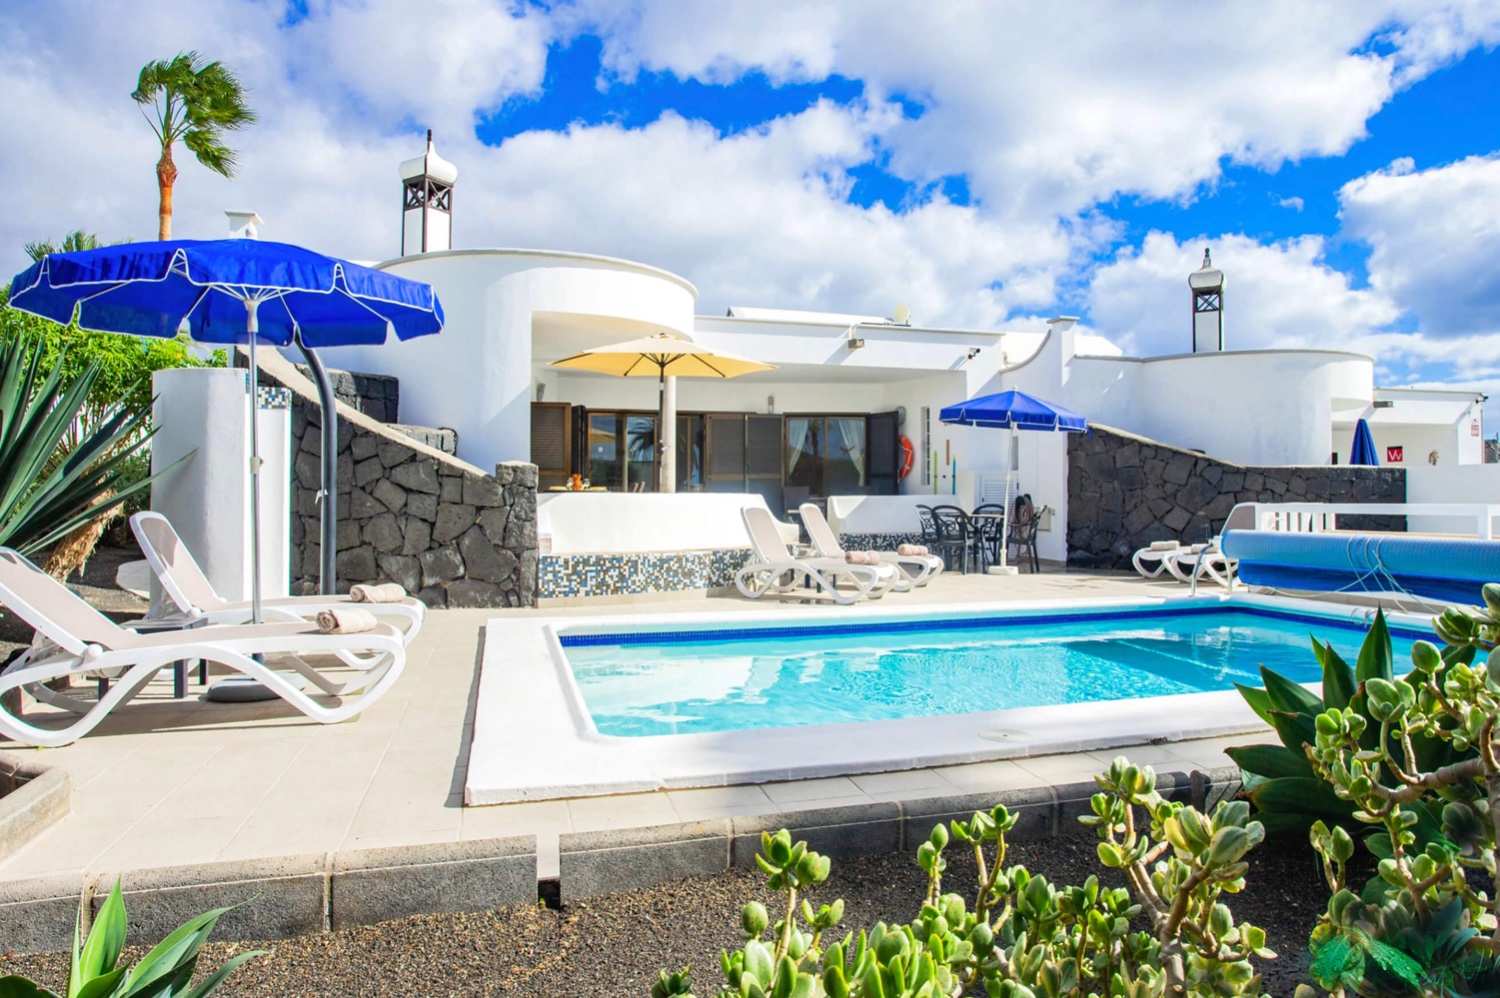 Hus med tre soverom og privat oppvarmet basseng i et vakkert boligkompleks i Playa Blanca sør på øya